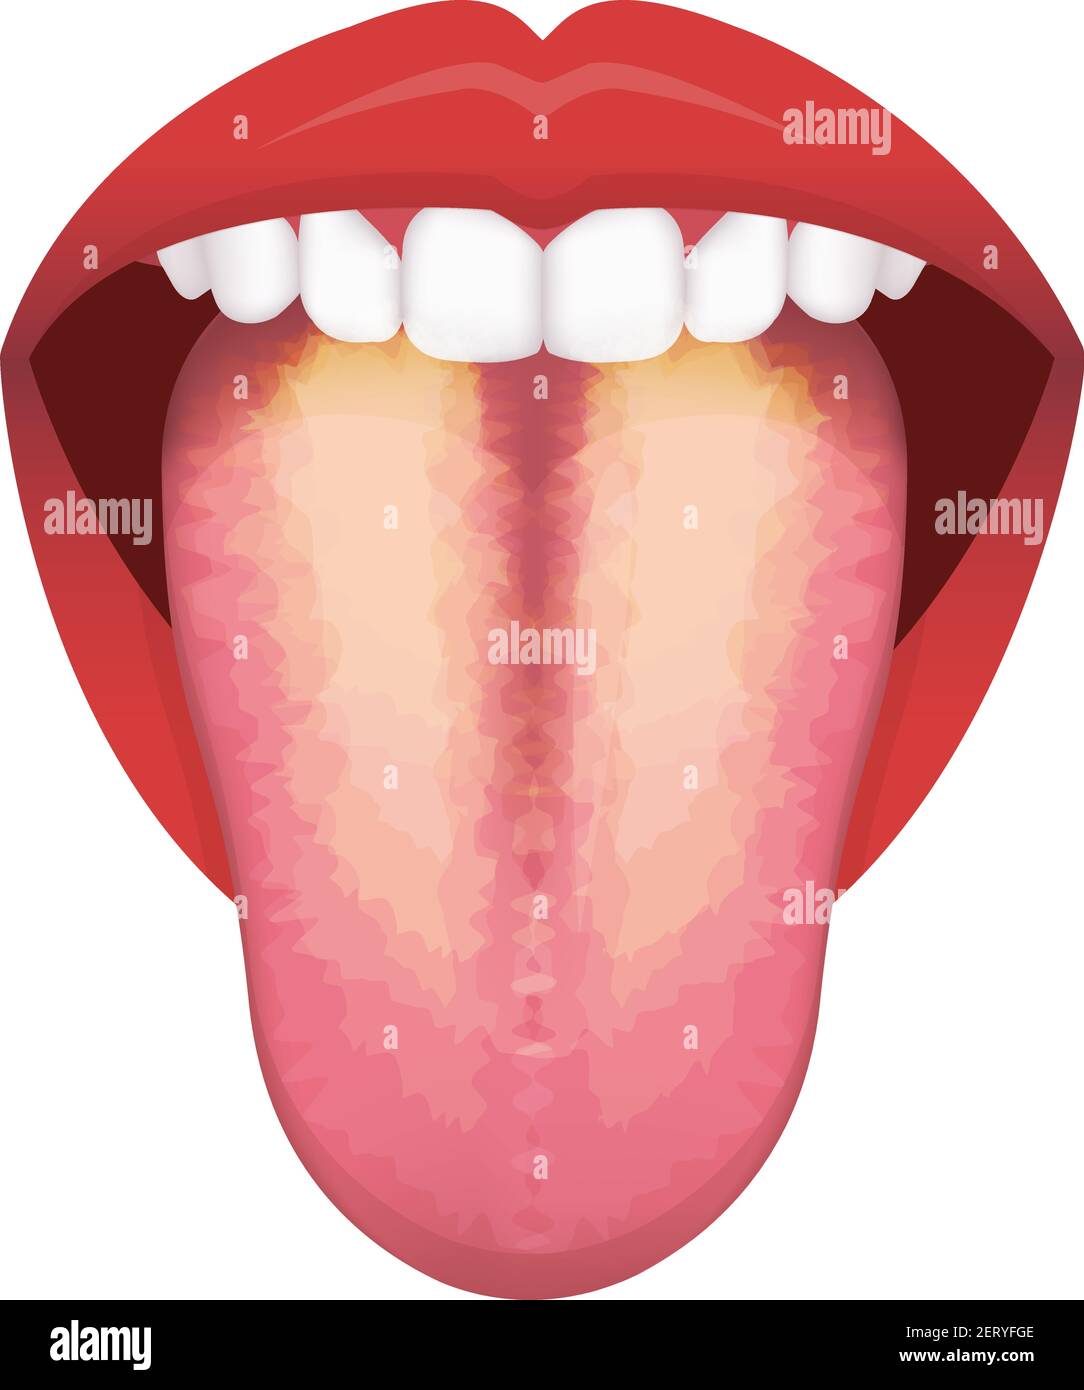 Zunge Gesundheit Zeichen Vektor-Illustration ( Gelbe beschichtete Zunge ) Stock Vektor